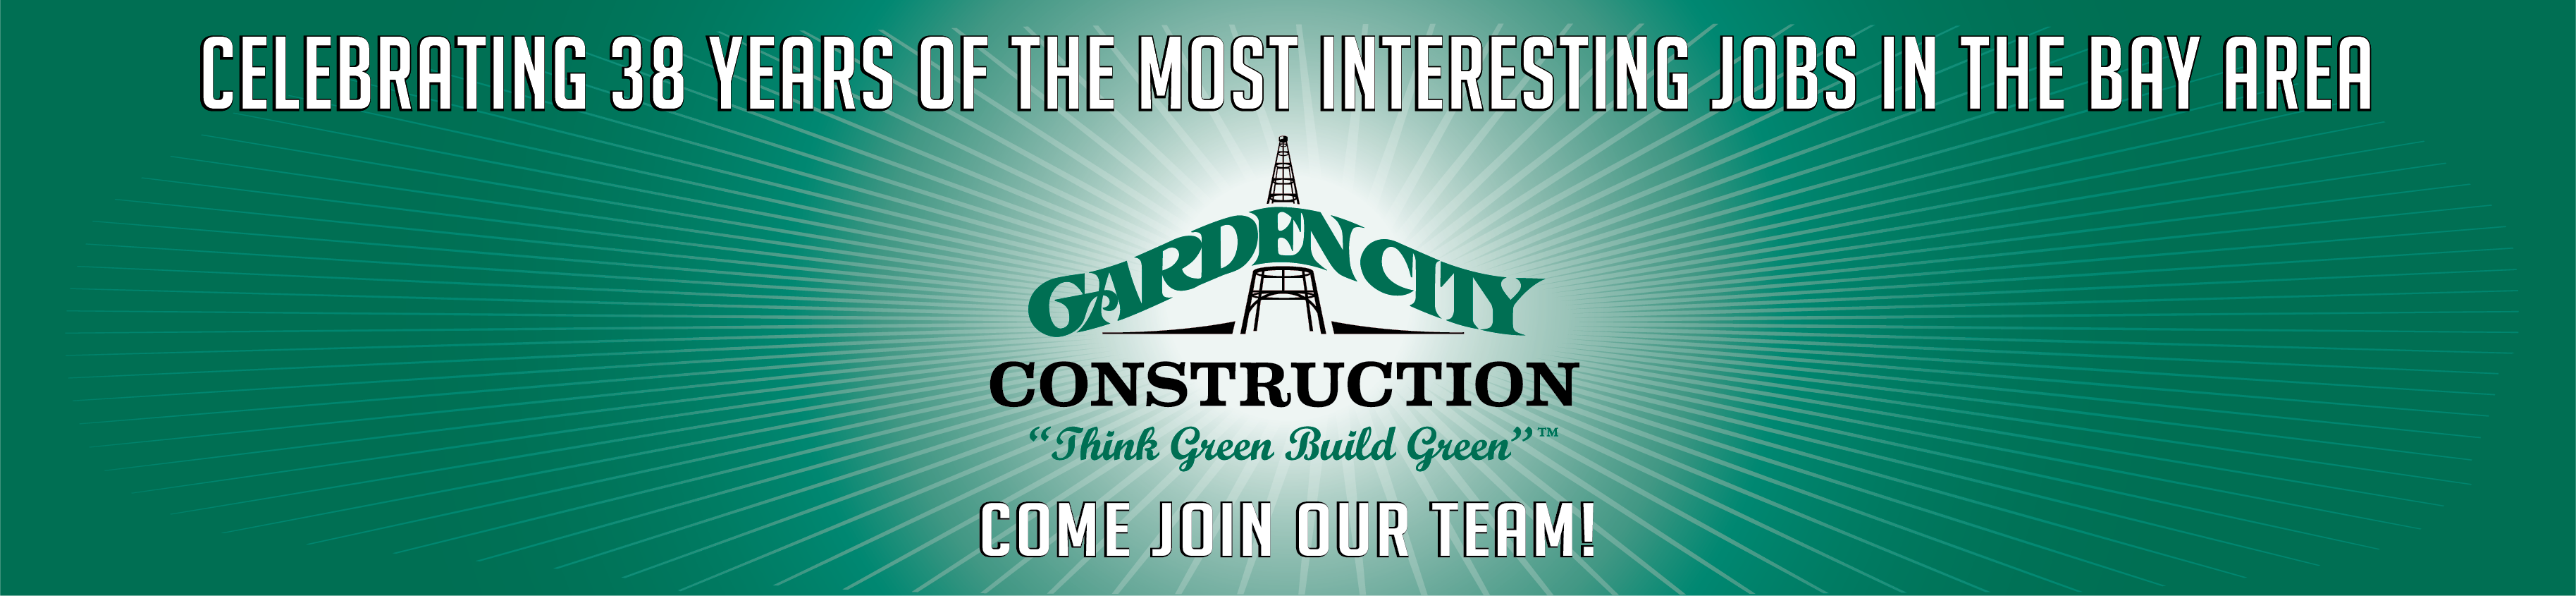 Garden City Construction